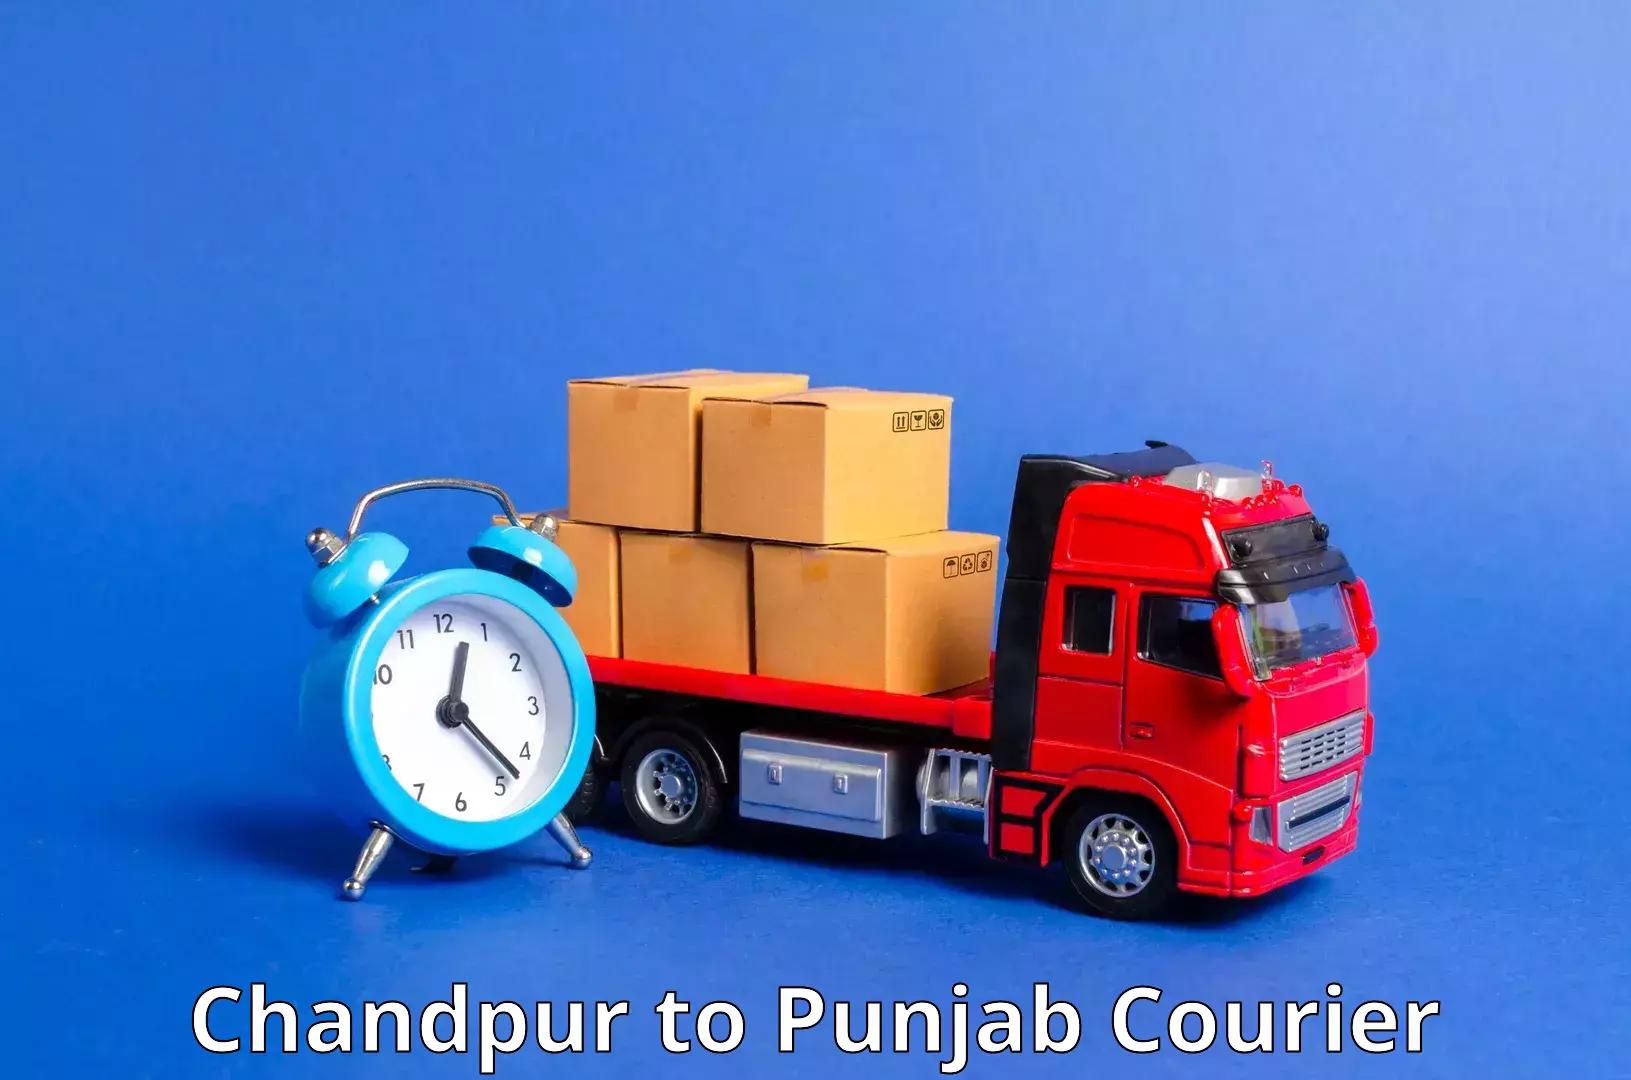 Urban courier service Chandpur to Sangrur